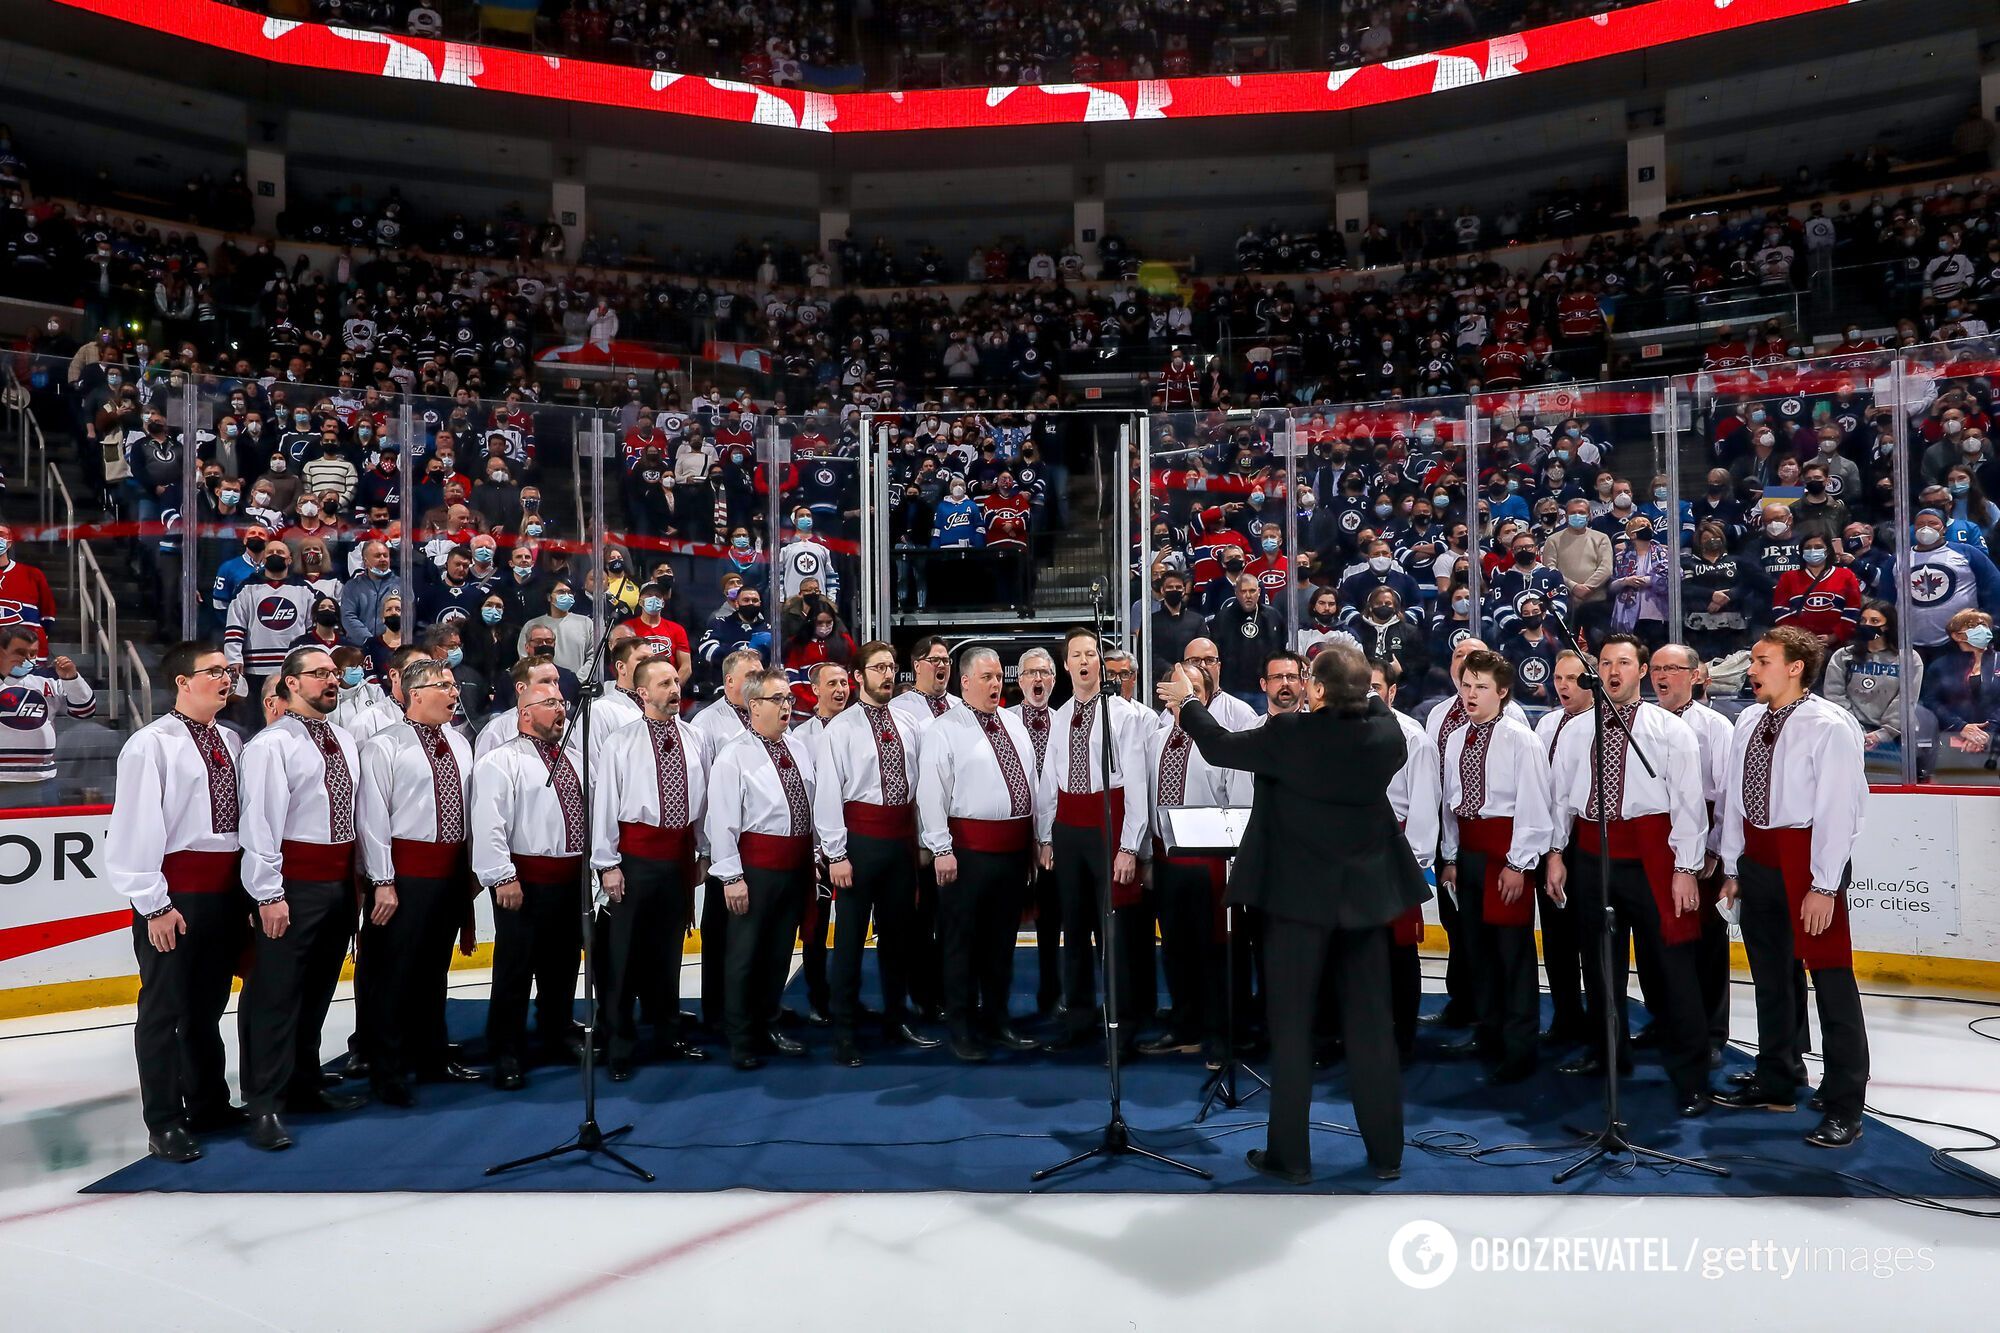 Український чоловічий хор "Гуслі" на матчі НХЛ.